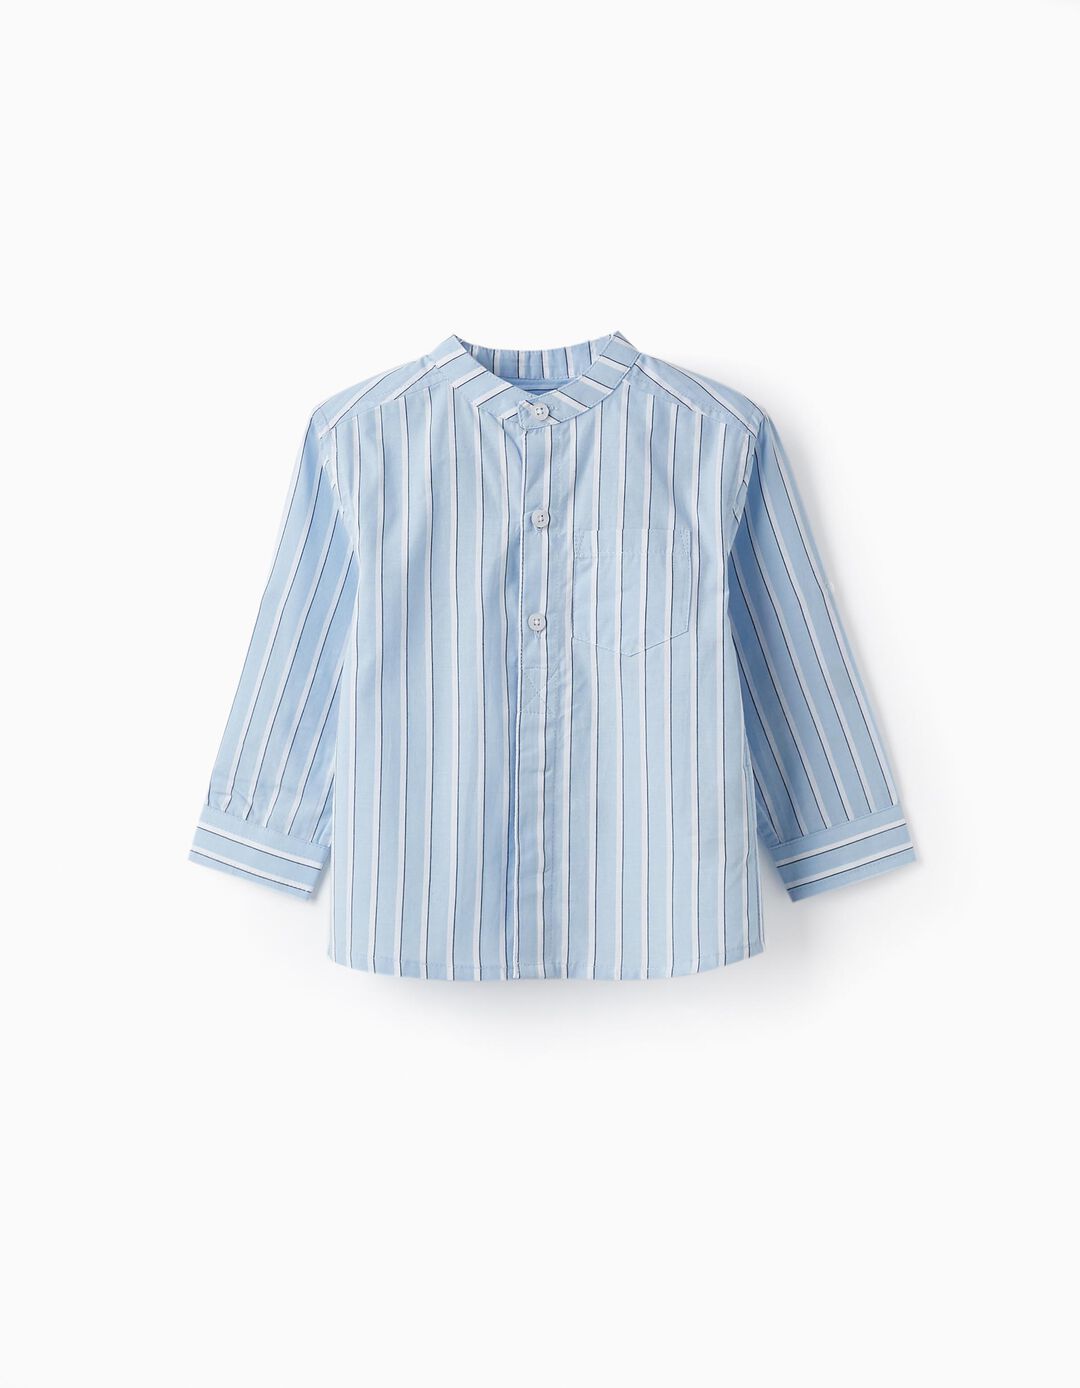 Camisa de Algodão às Riscas para Bebé Menino, Azul/Branco